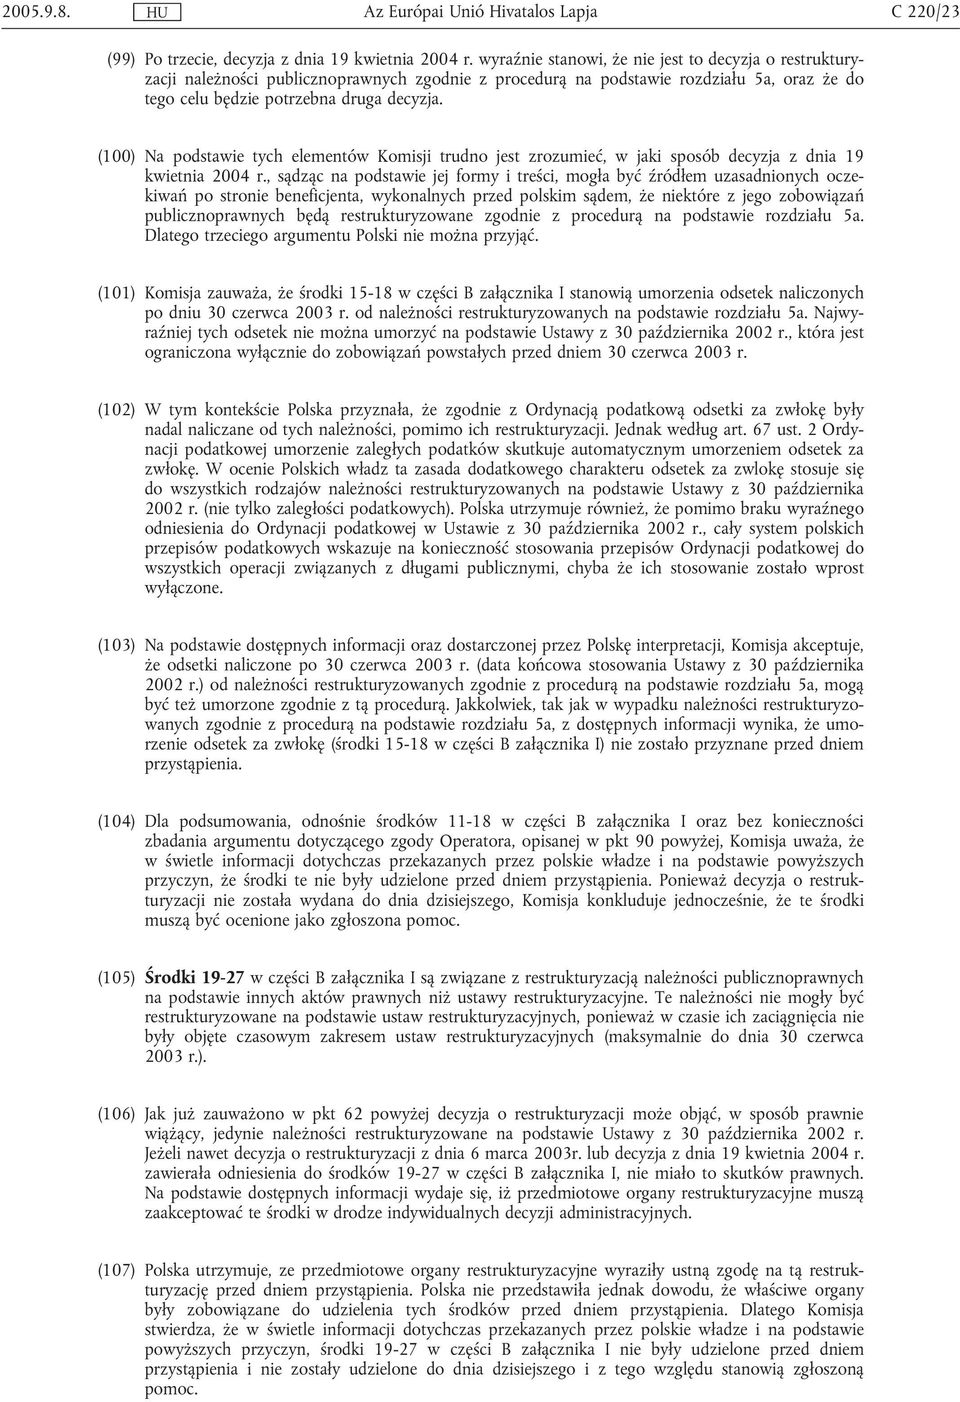 (100) Na podstawie tych elementów Komisji trudno jest zrozumieć, w jaki sposób decyzja z dnia 19 kwietnia 2004 r.